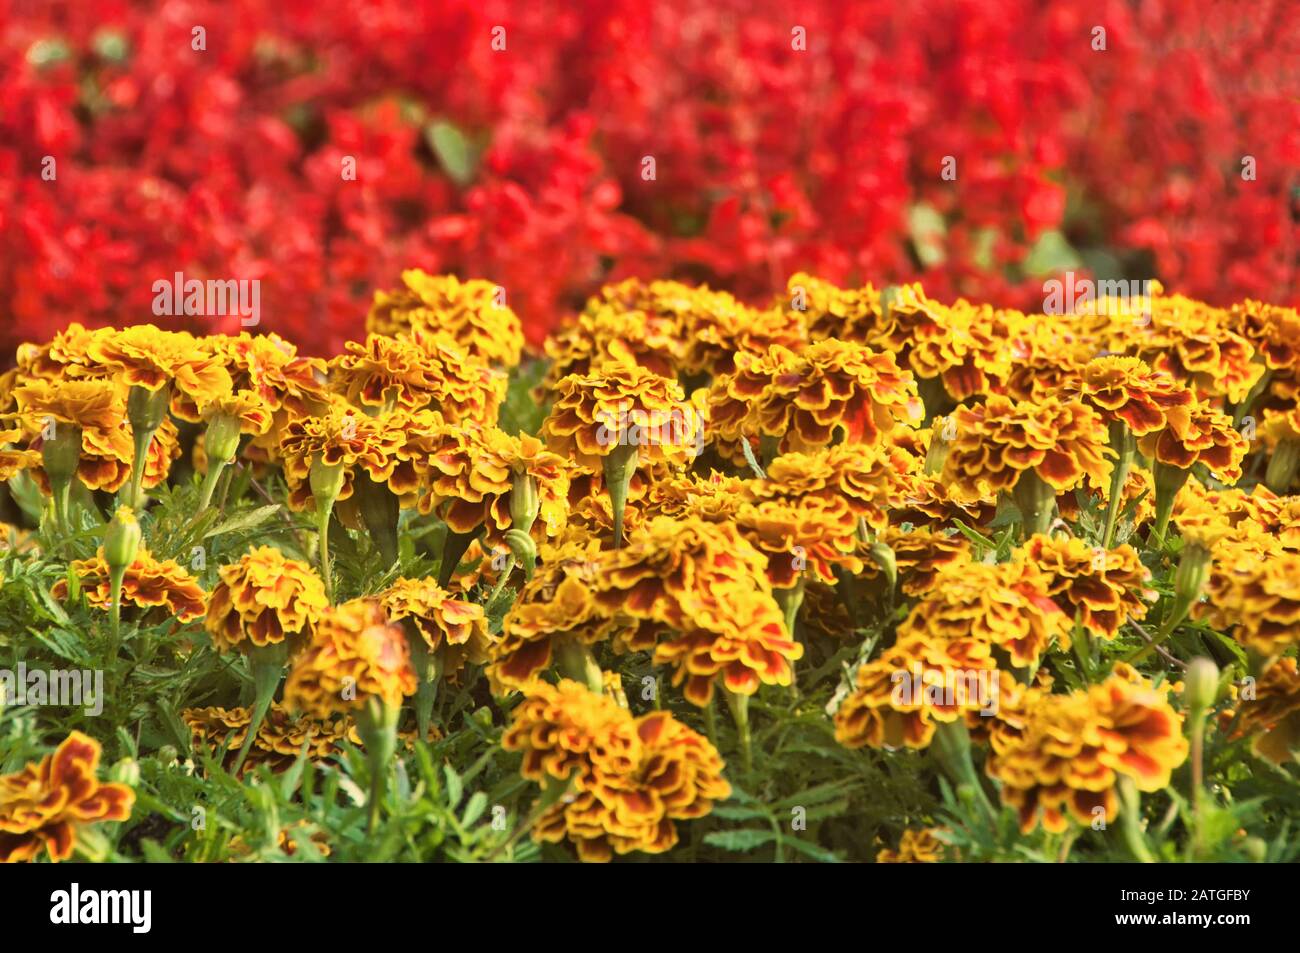 Blooming Tagete francese in giardino, Tagetes Patula, giallo arancio mazzo di fiori, foglie verdi piccolo arbusto, il fuoco selettivo. Foto Stock